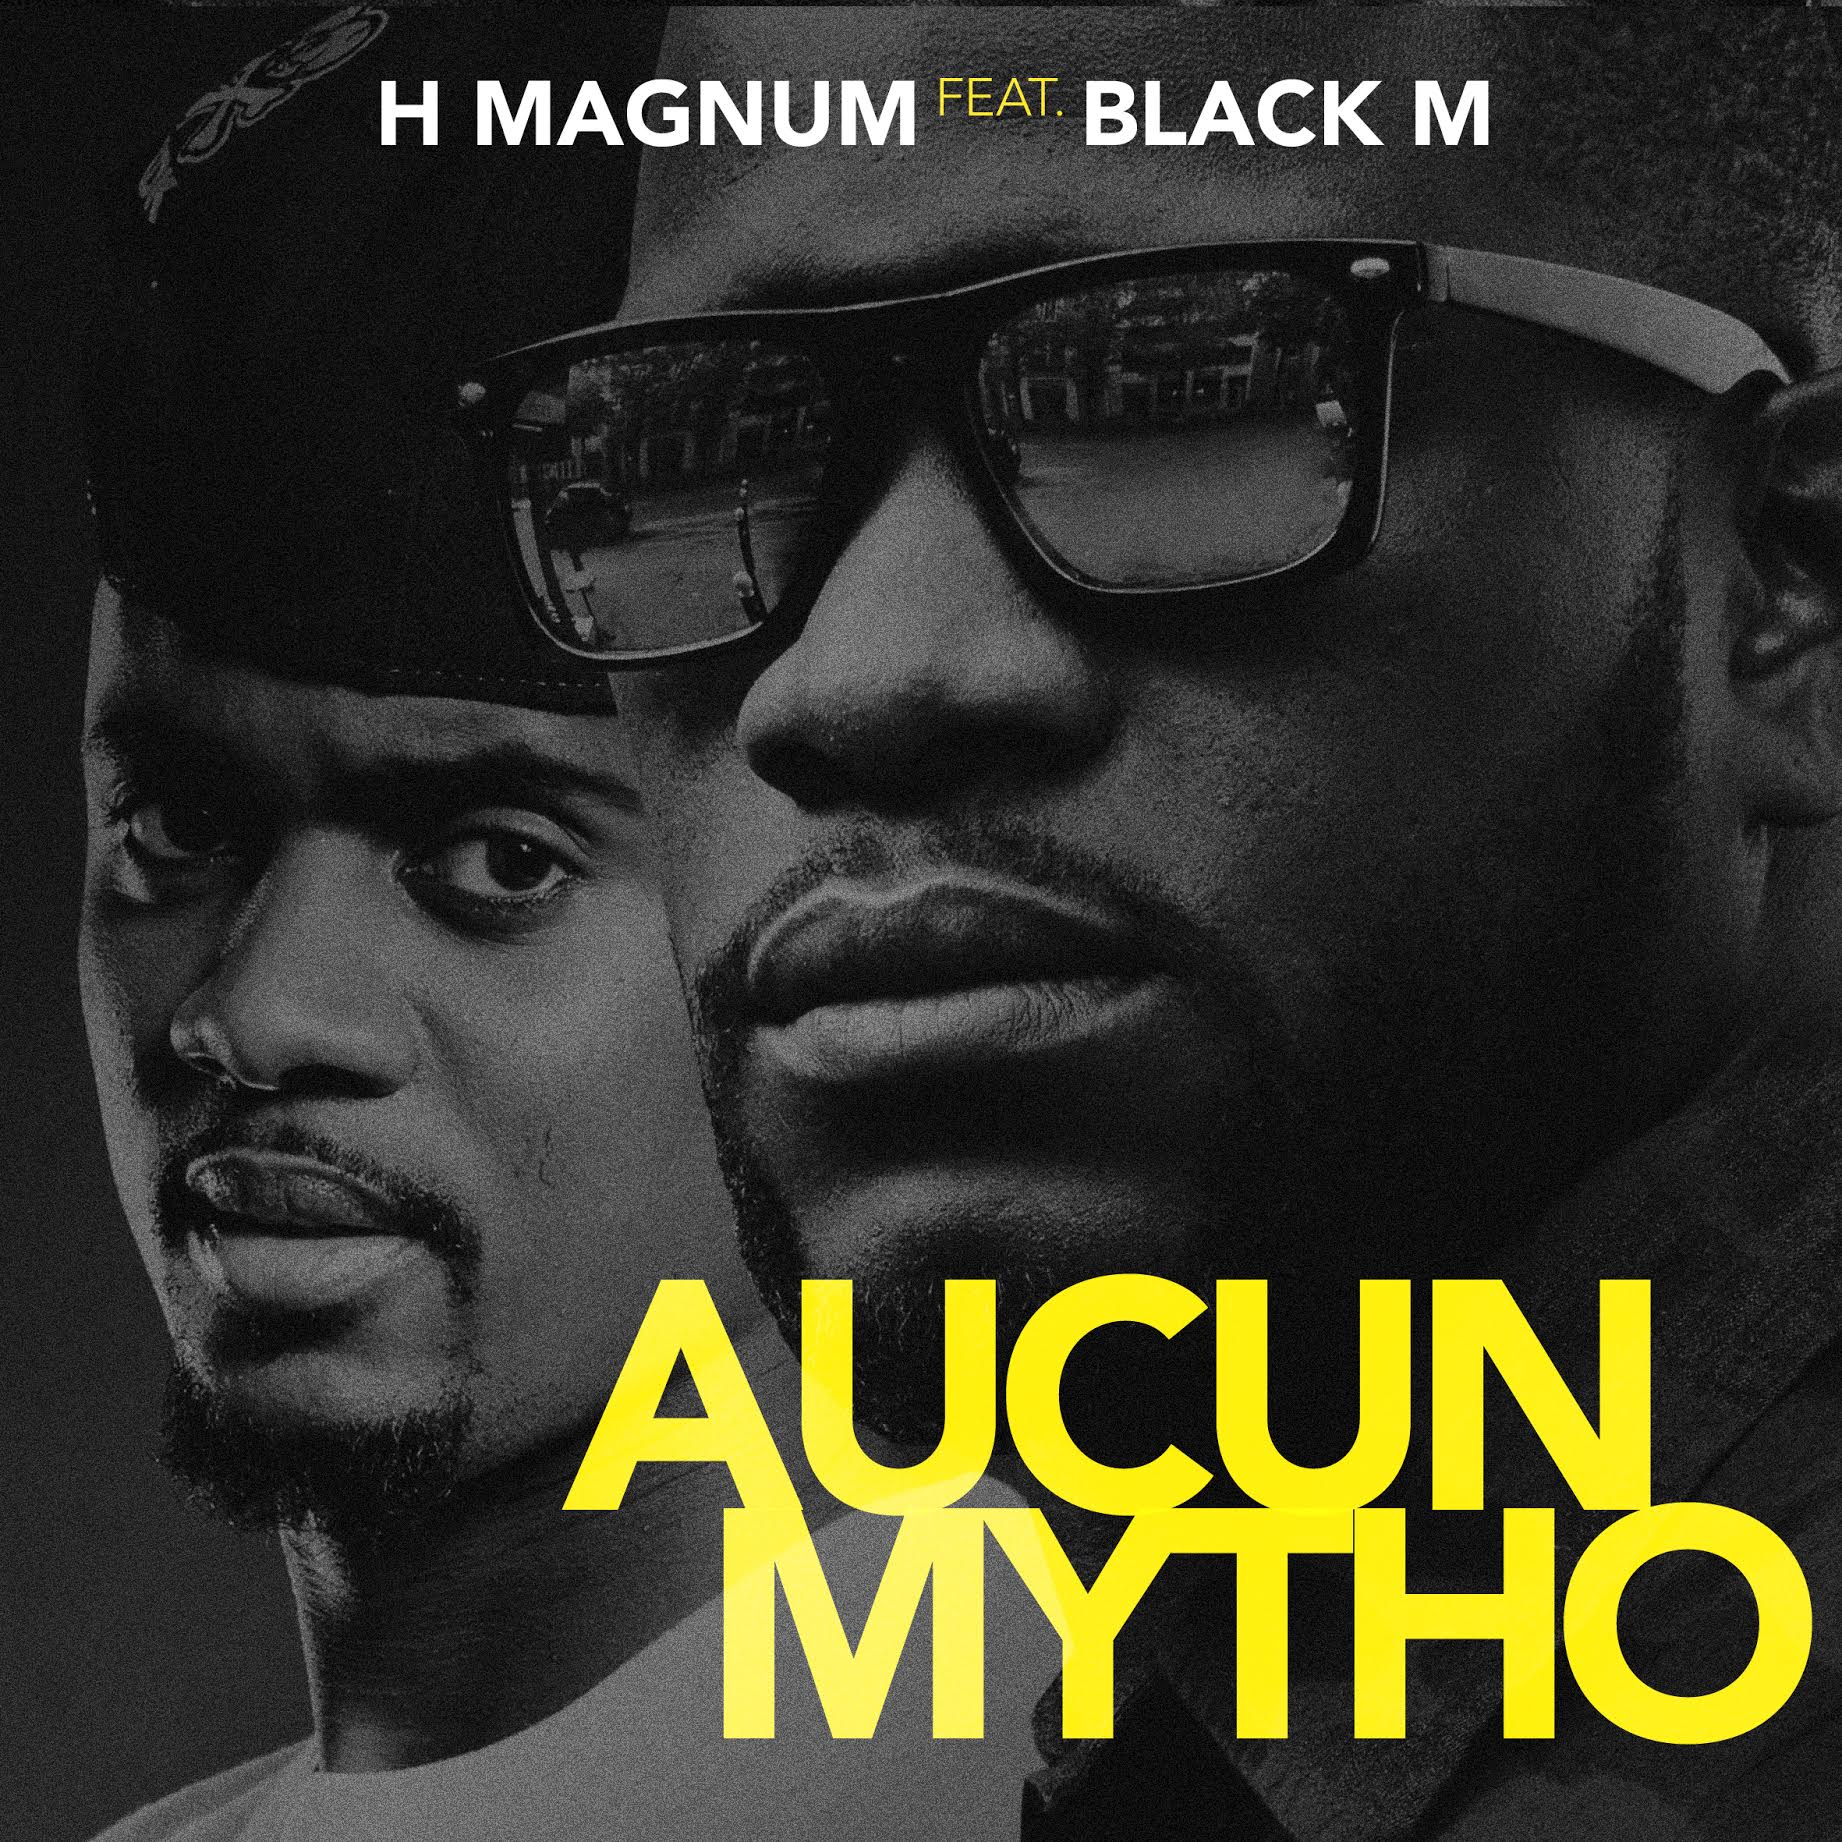 H Magnum : &quot;Aucun Mytho&quot; feat. Black M